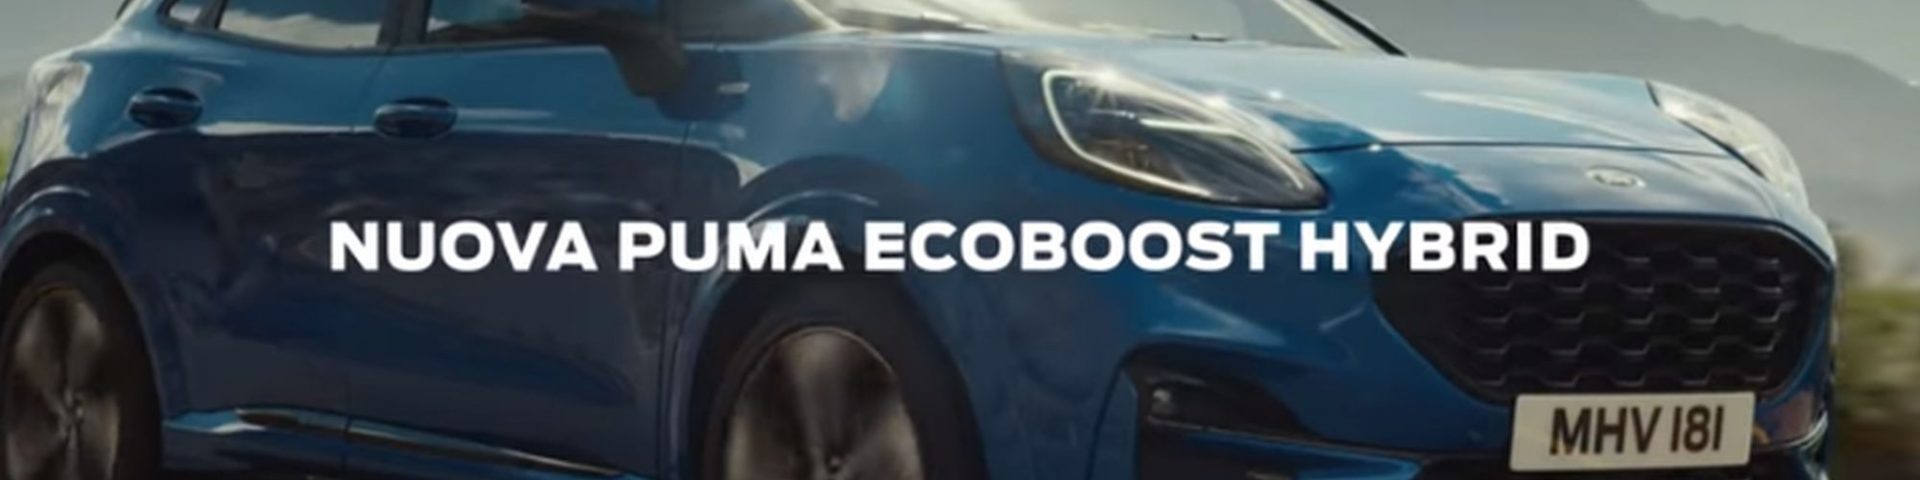 Pubblicità Puma EcoBoost Hybrid – Video, colonna sonora e attori